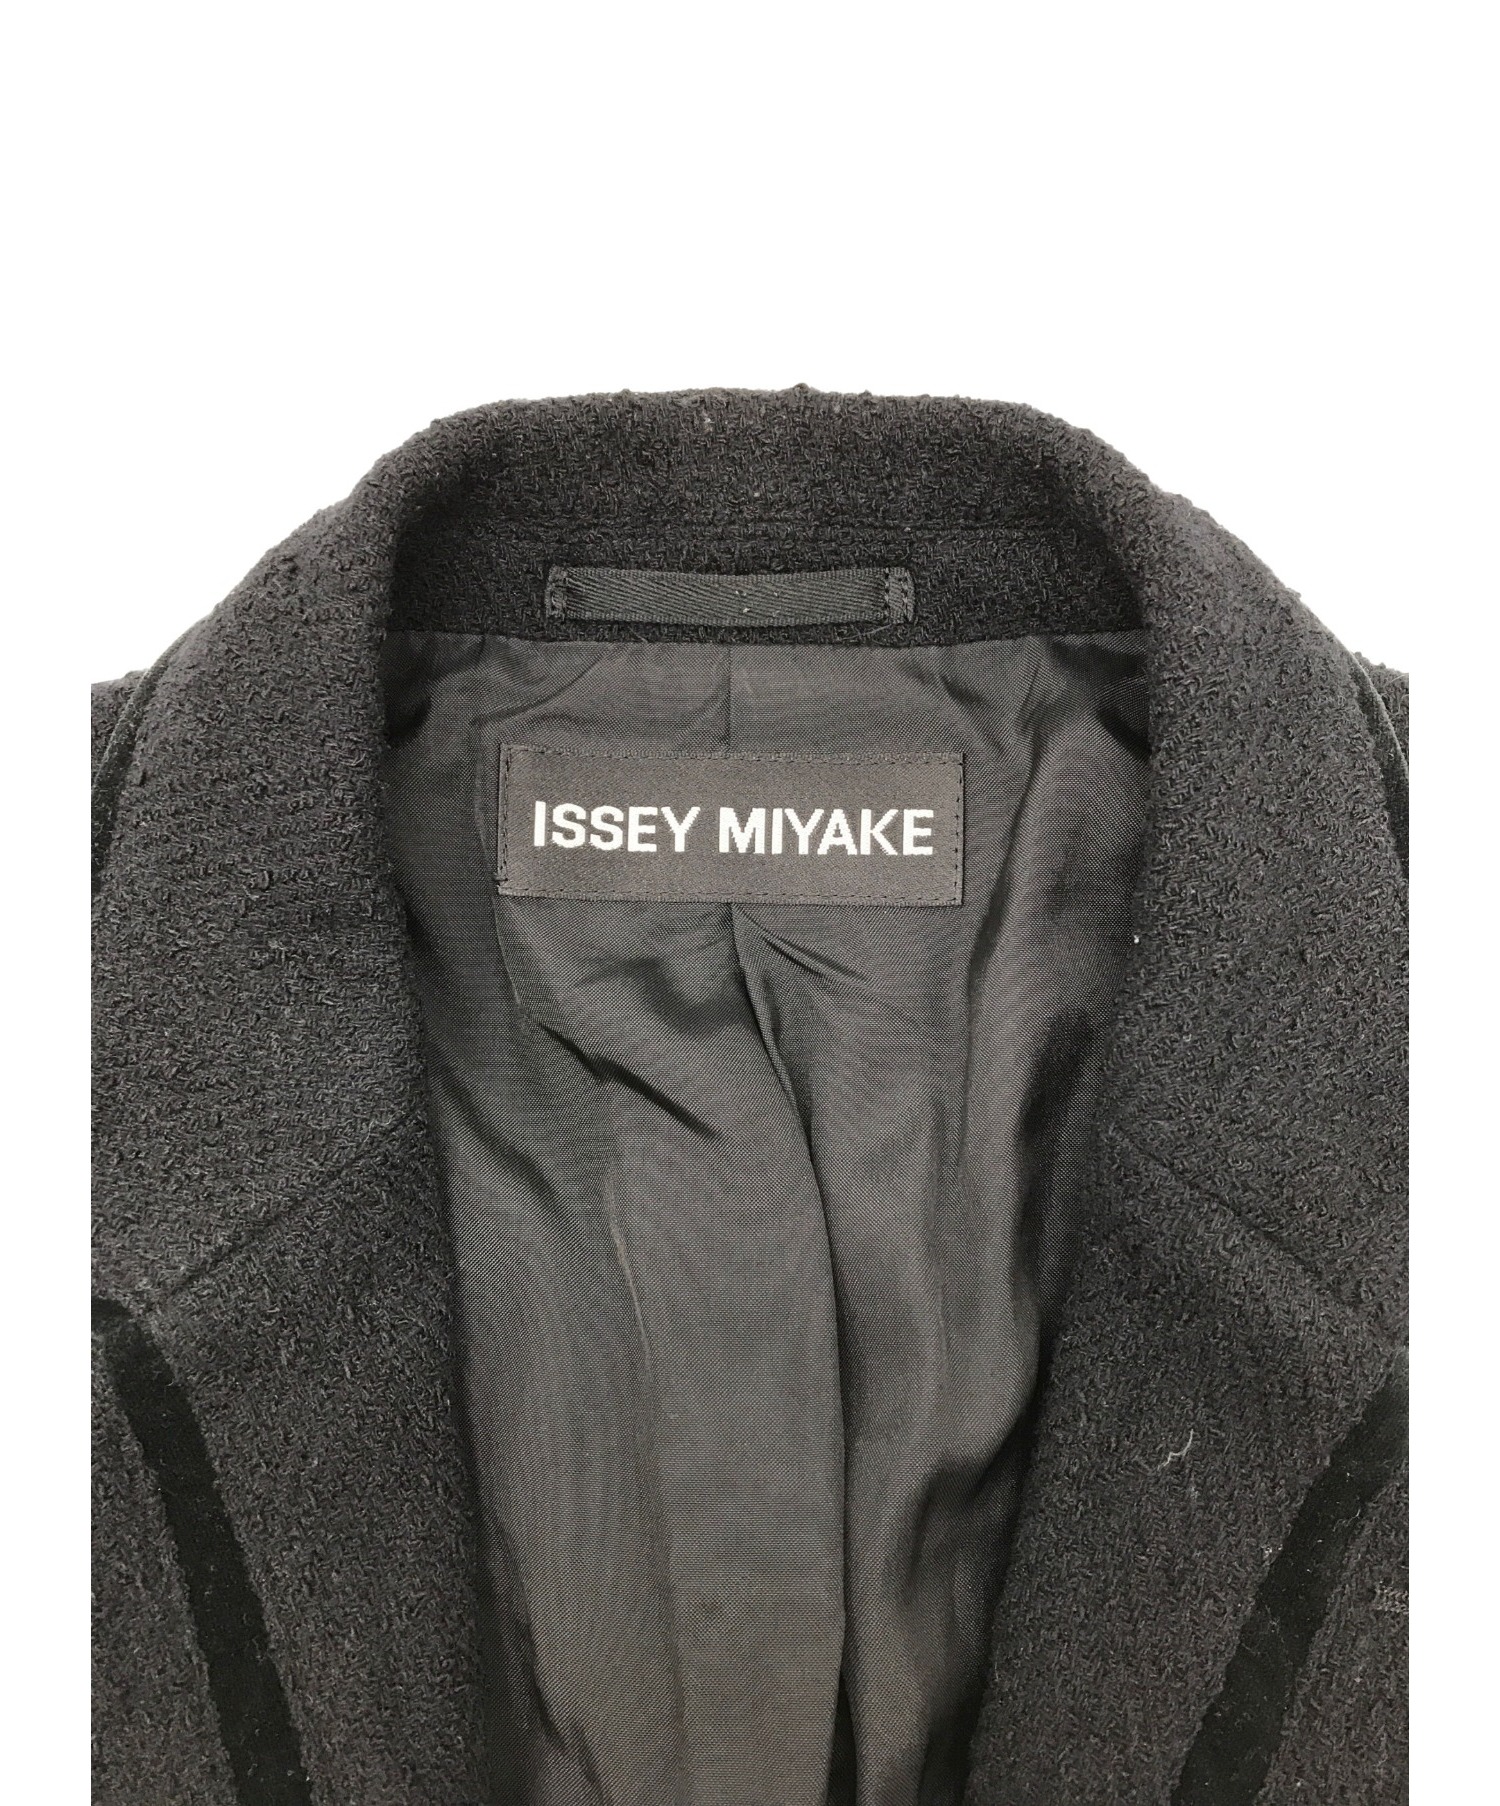 ISSEY MIYAKE (イッセイミヤケ) ベロアパイピングテーラードジャケット ブラック サイズ:2 ME63FD177